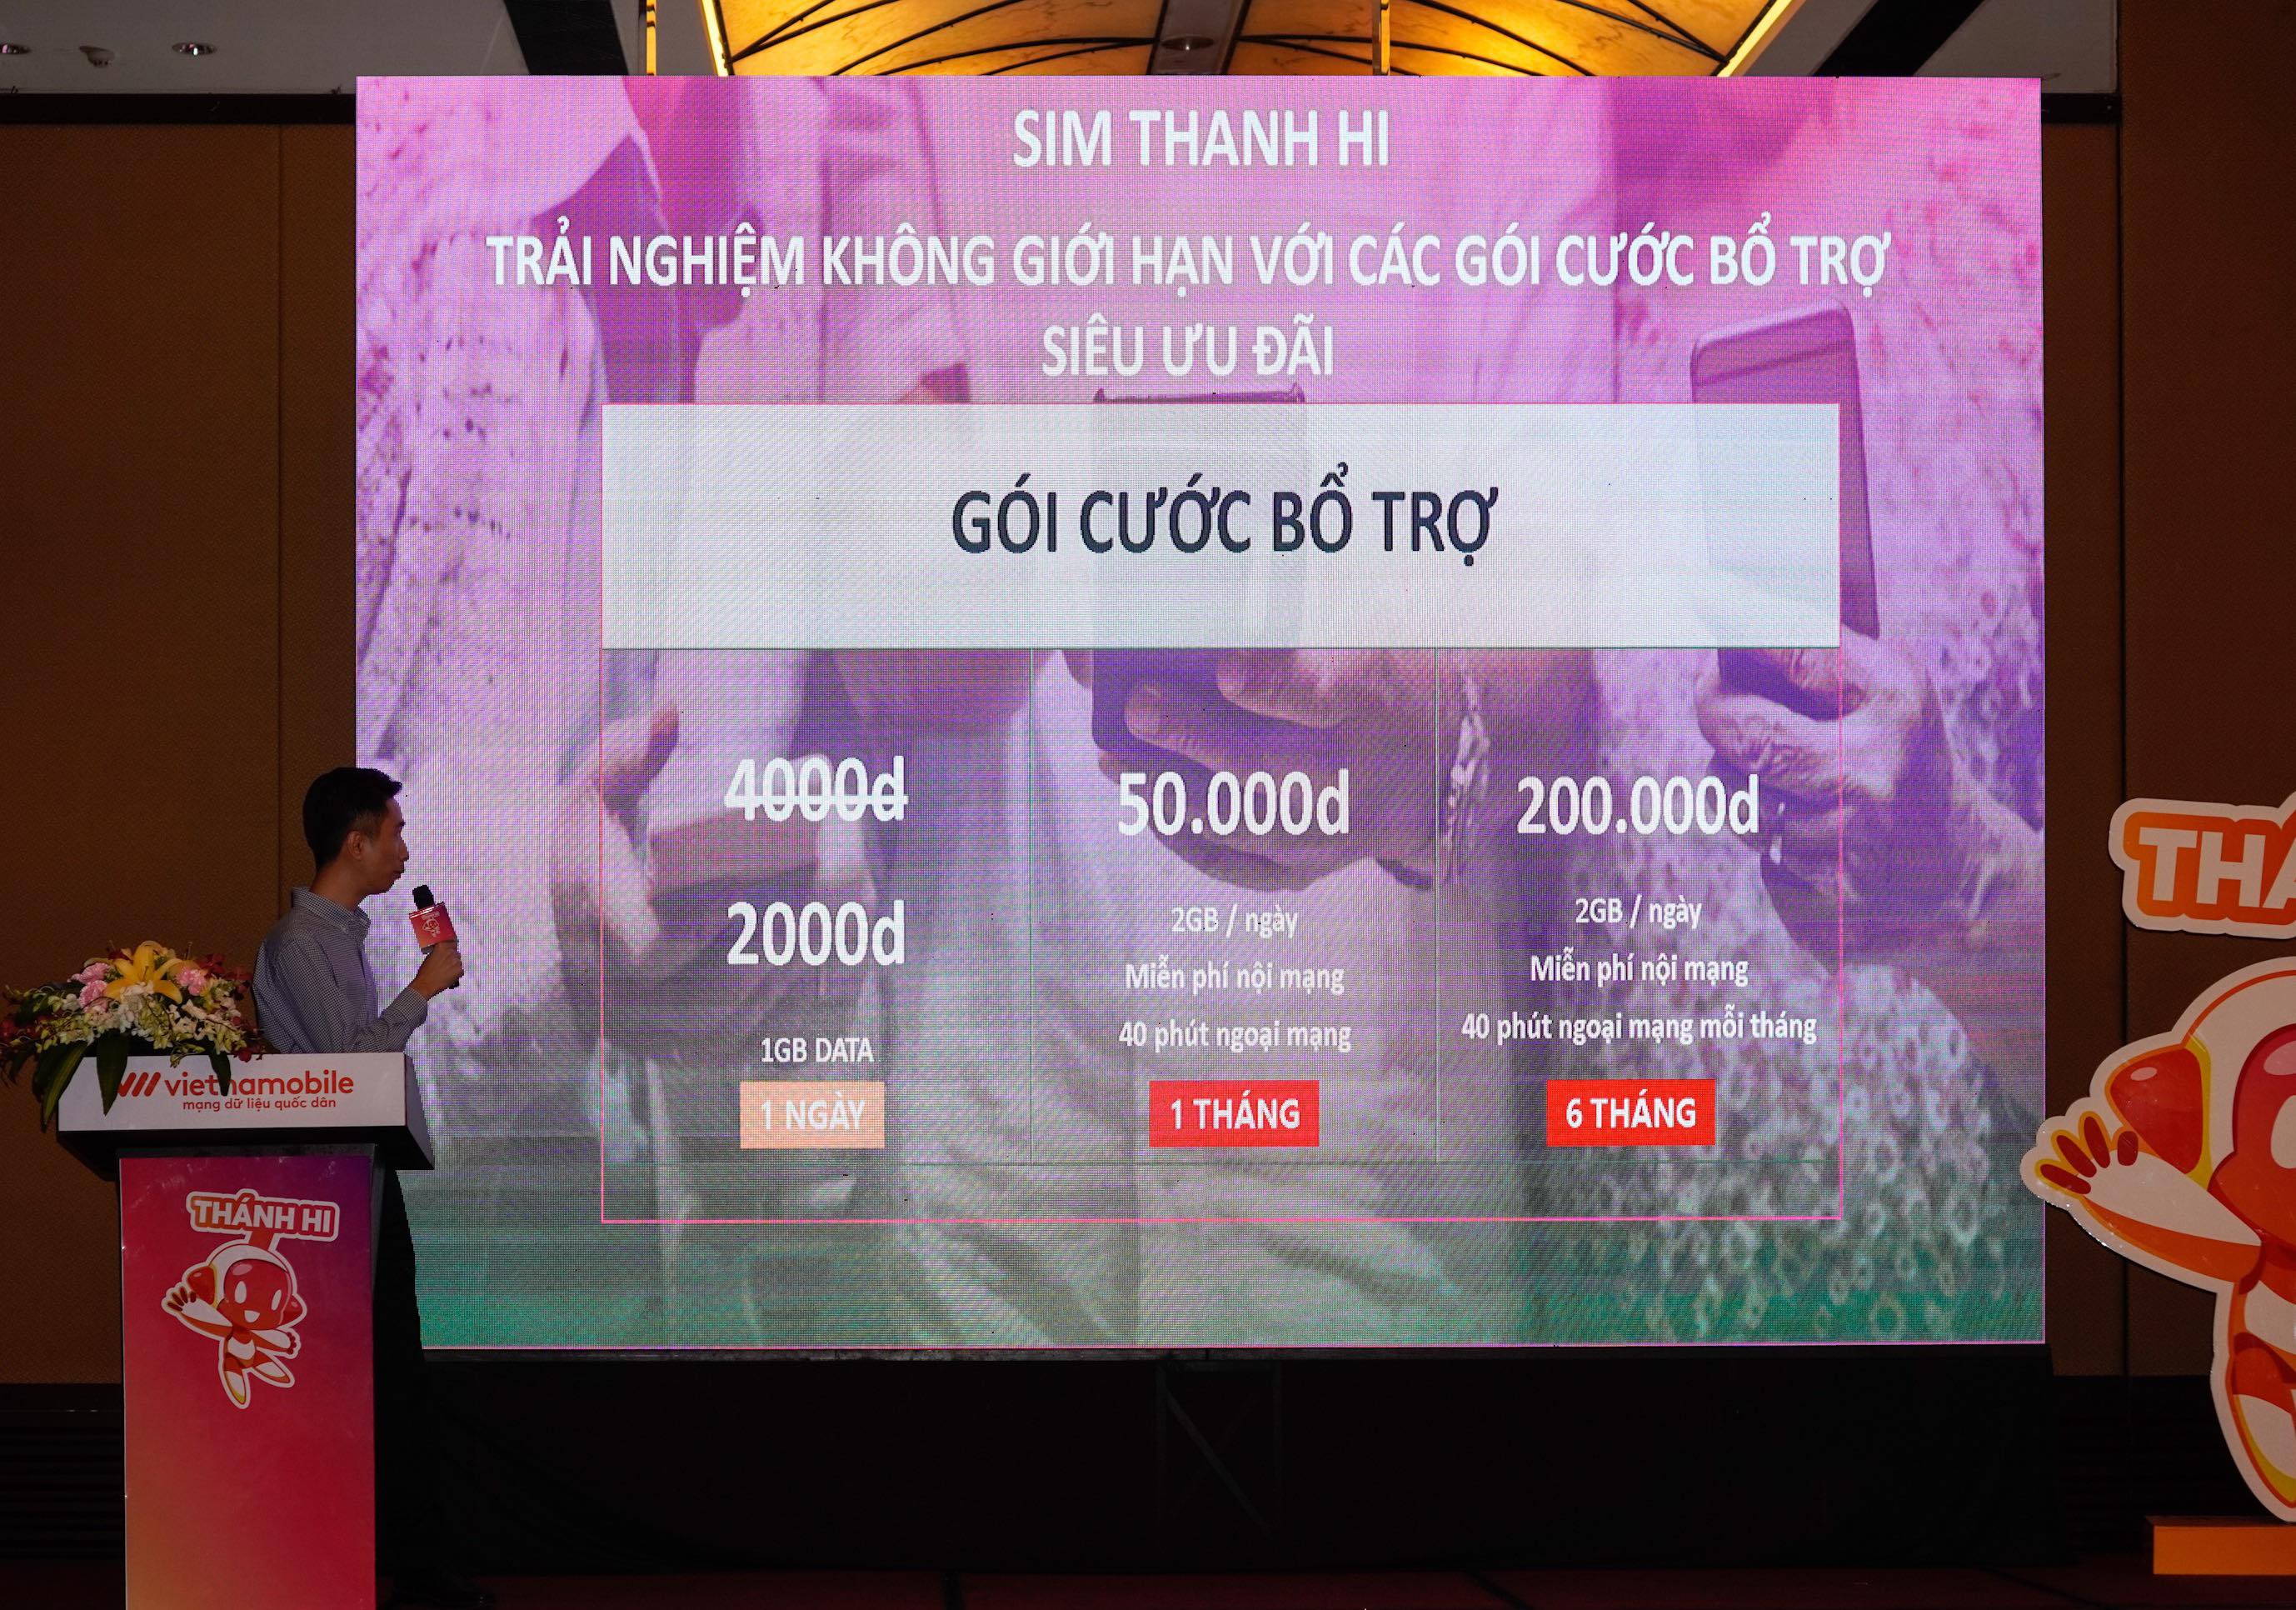 Vietnamobile ra mắt sim Thánh Hi không giới hạn data, ứng dụng Bima và dịch vụ thoại qua internet